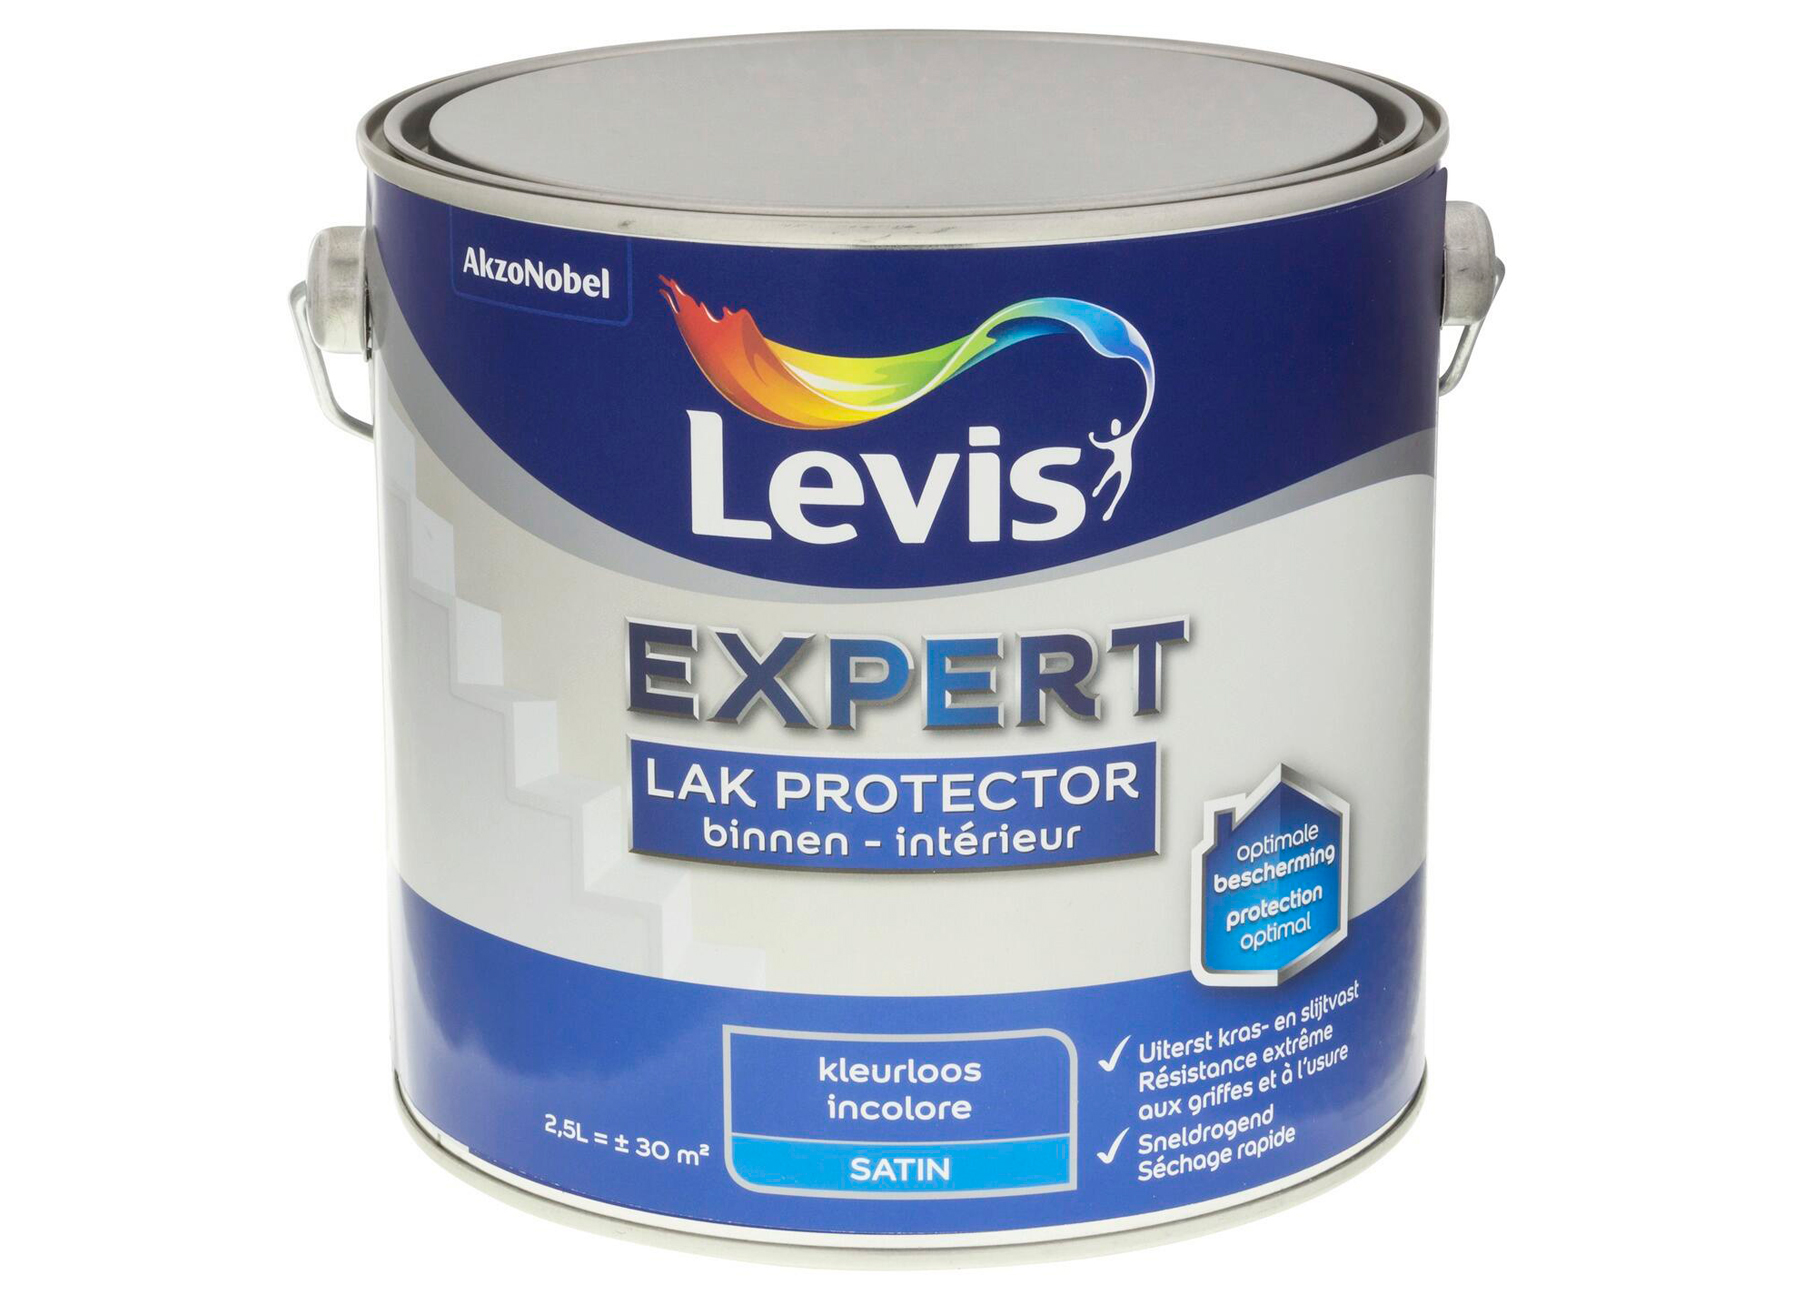 Bekwaam vork Document Levis Expert Lak Protector - decoratie - verven - binnenverven -  watergedragen lakken acrylaat en latex - levis expert lak protector